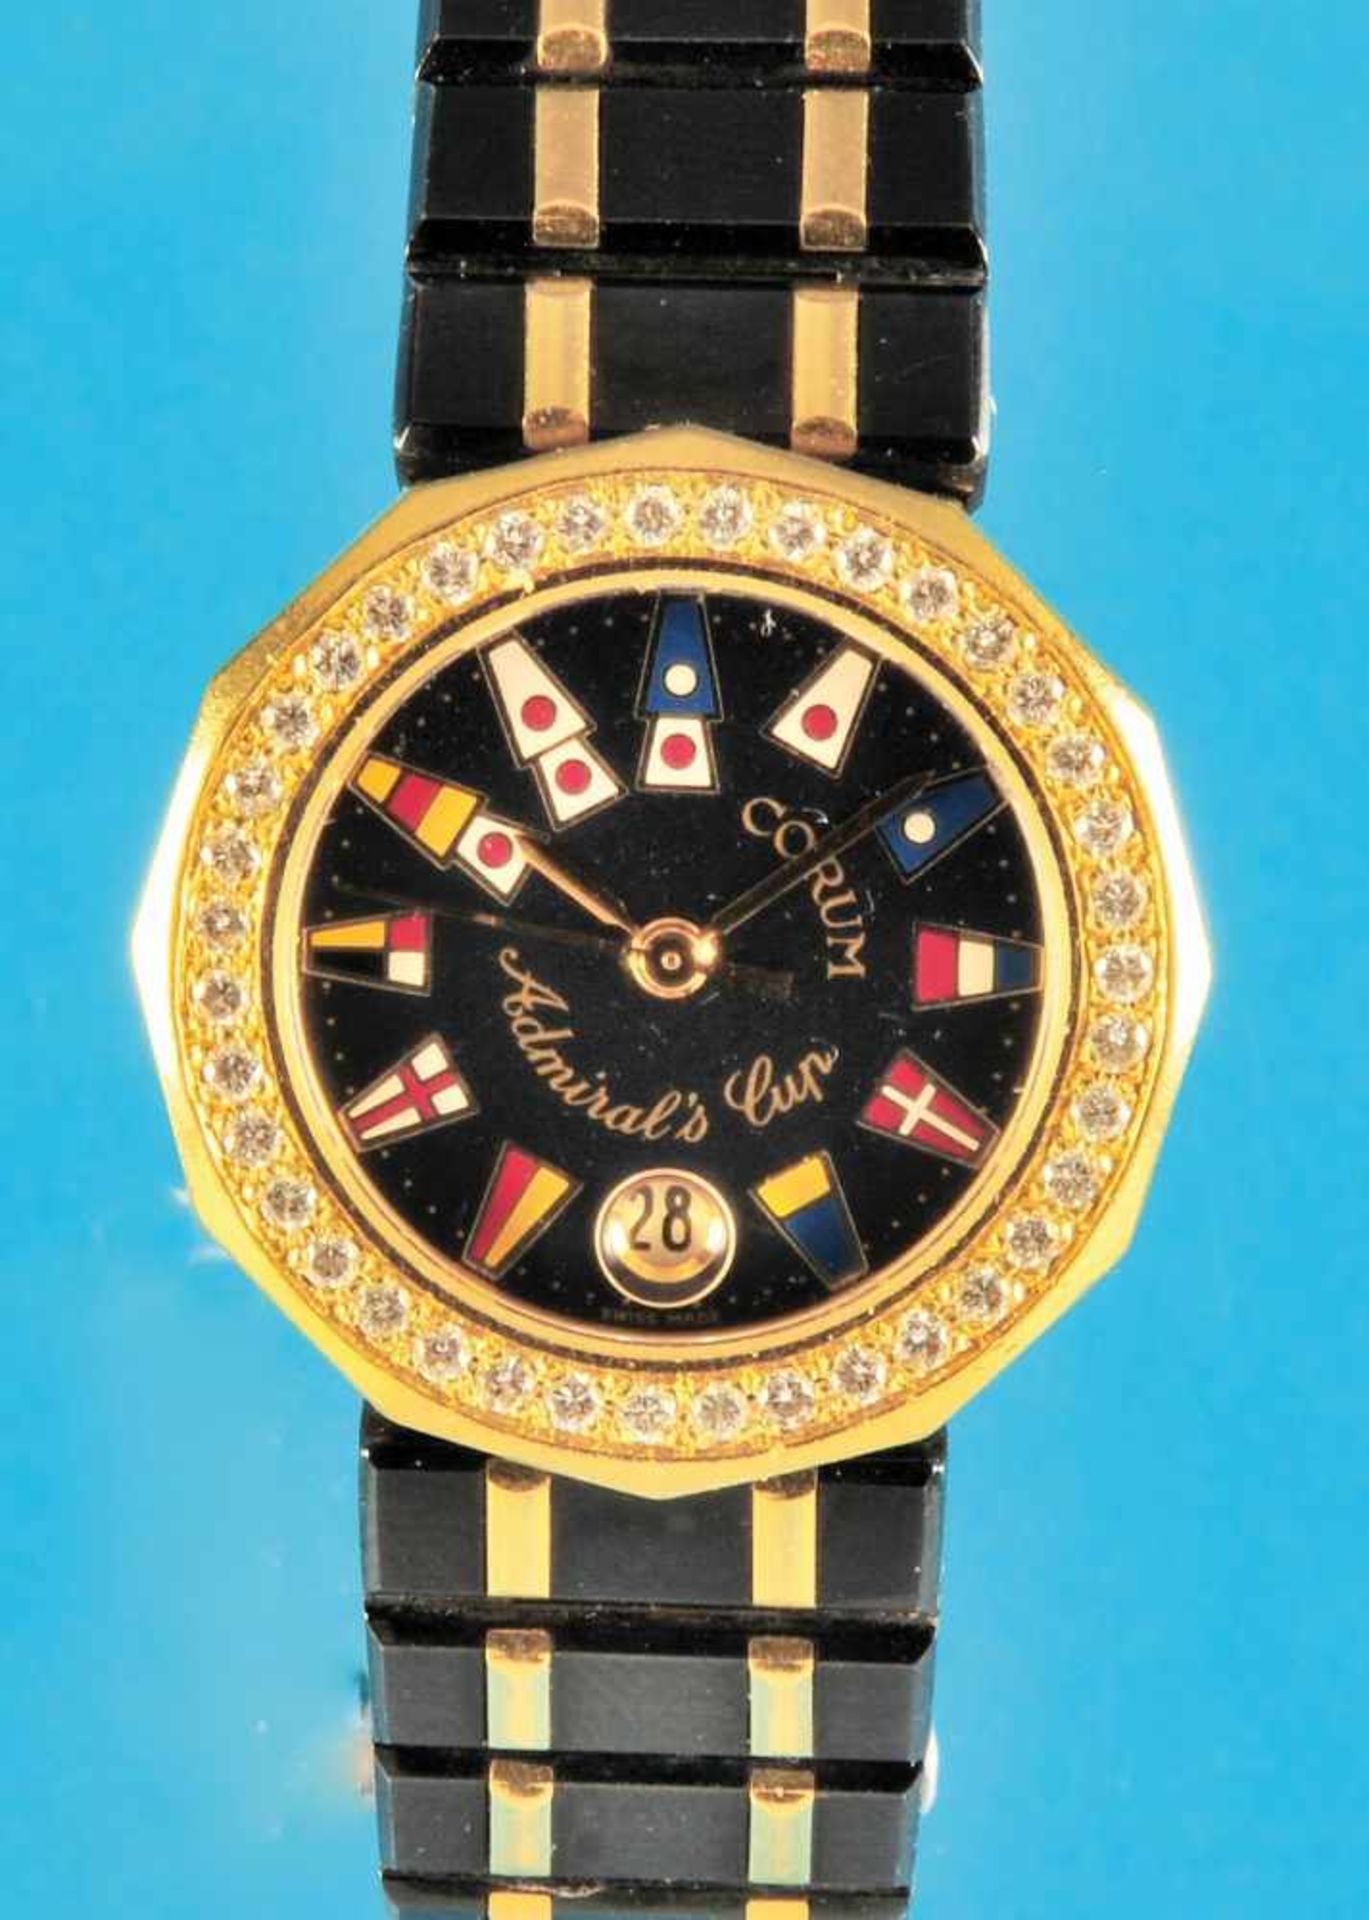 Damen-Armbanduhr, Corum Admirals-Cup, bruniertes Gehäuse mit Brillantlunette, schwarzes